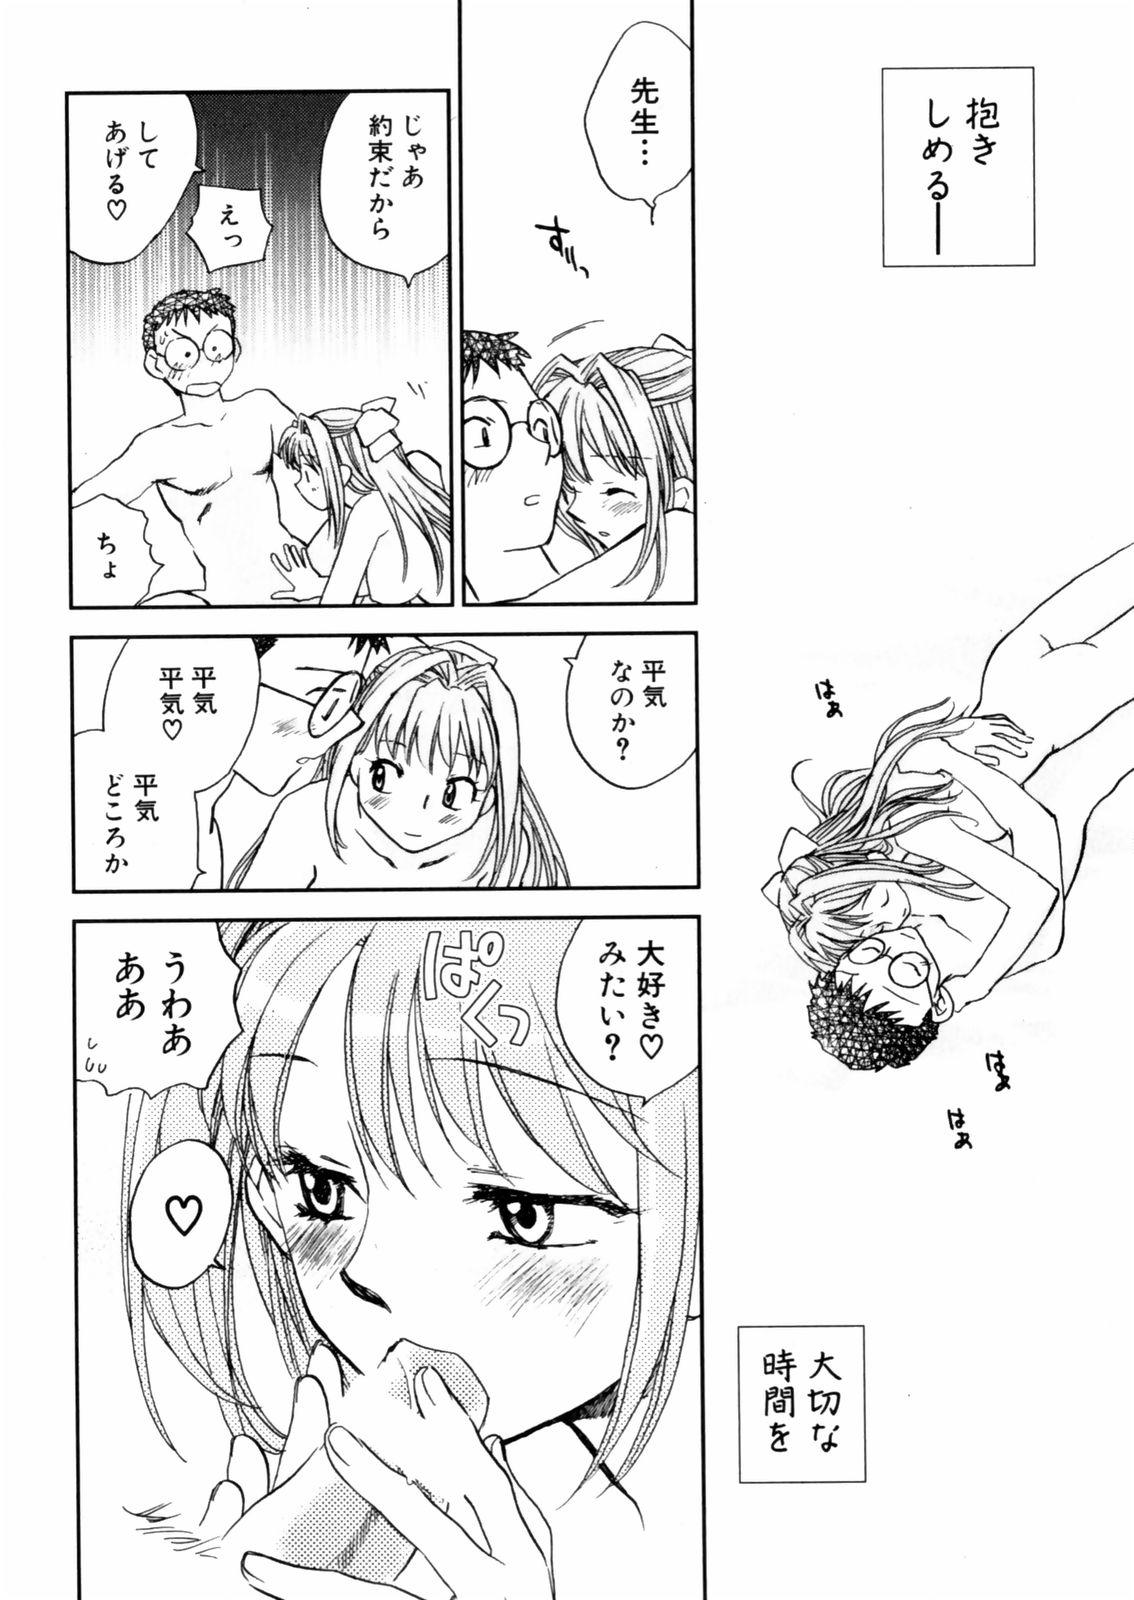 [Okano Ahiru] Hanasake ! Otome Juku (Otome Private Tutoring School) Vol.2 107